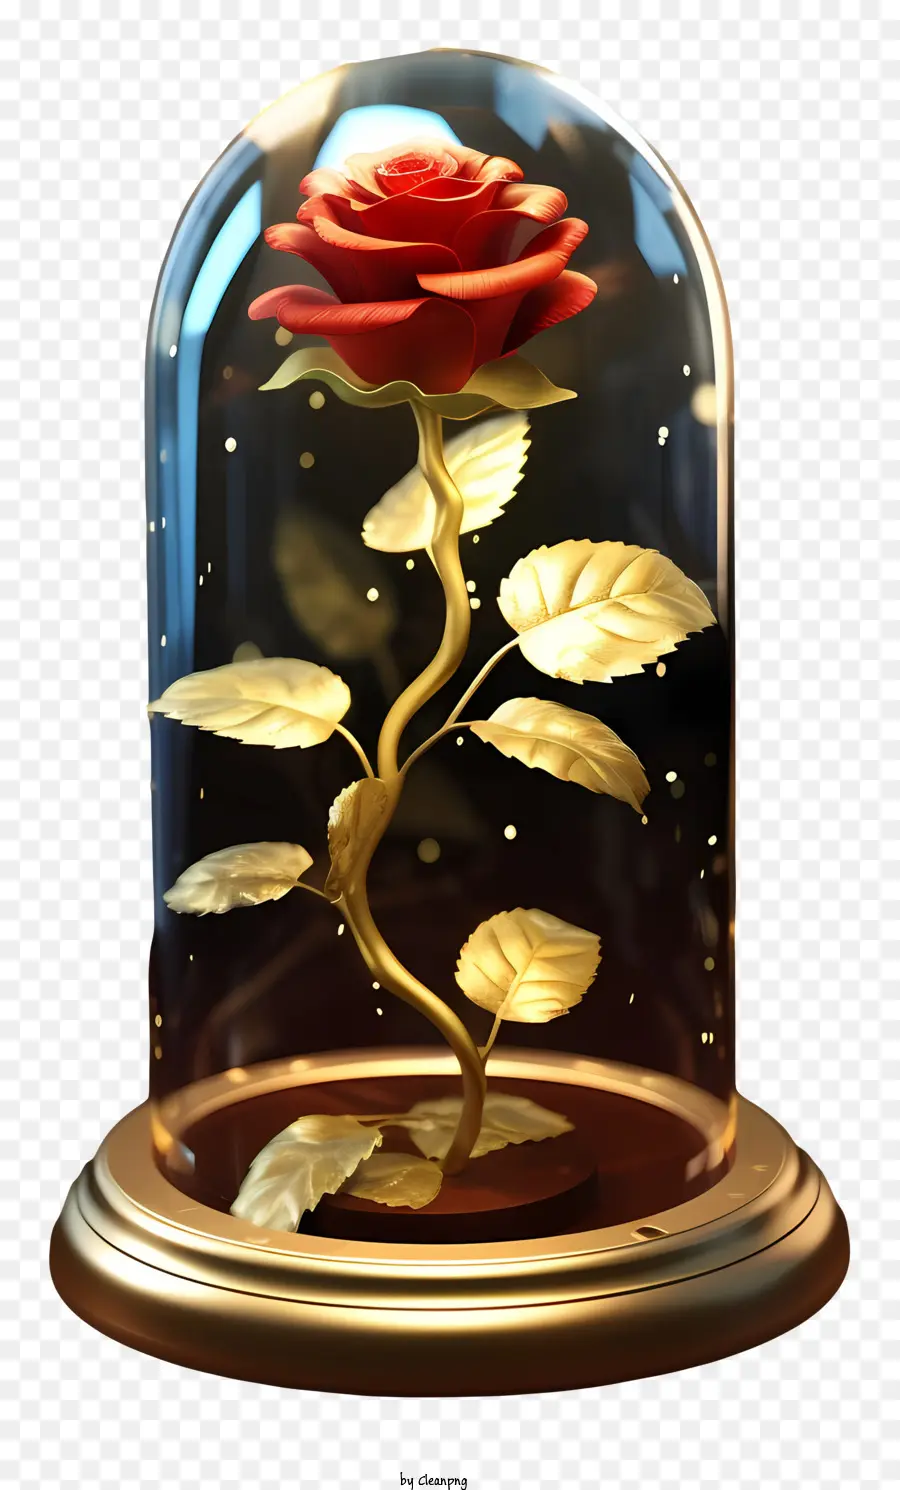 rote rose - Rote Rose in Glaskuppel mit goldenem Glühen